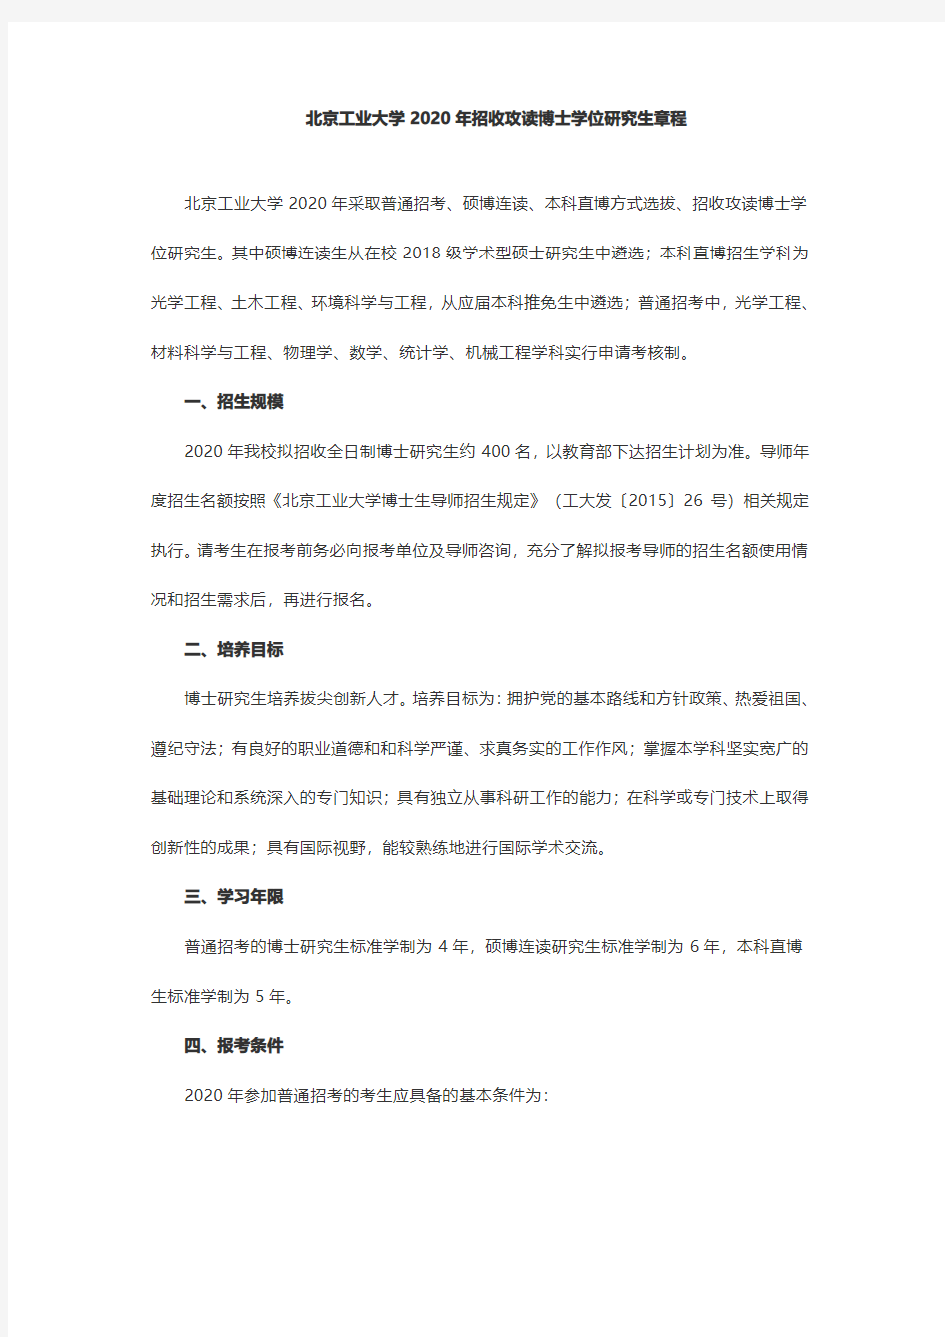 北京工业大学2020年招收攻读博士学位研究生章程